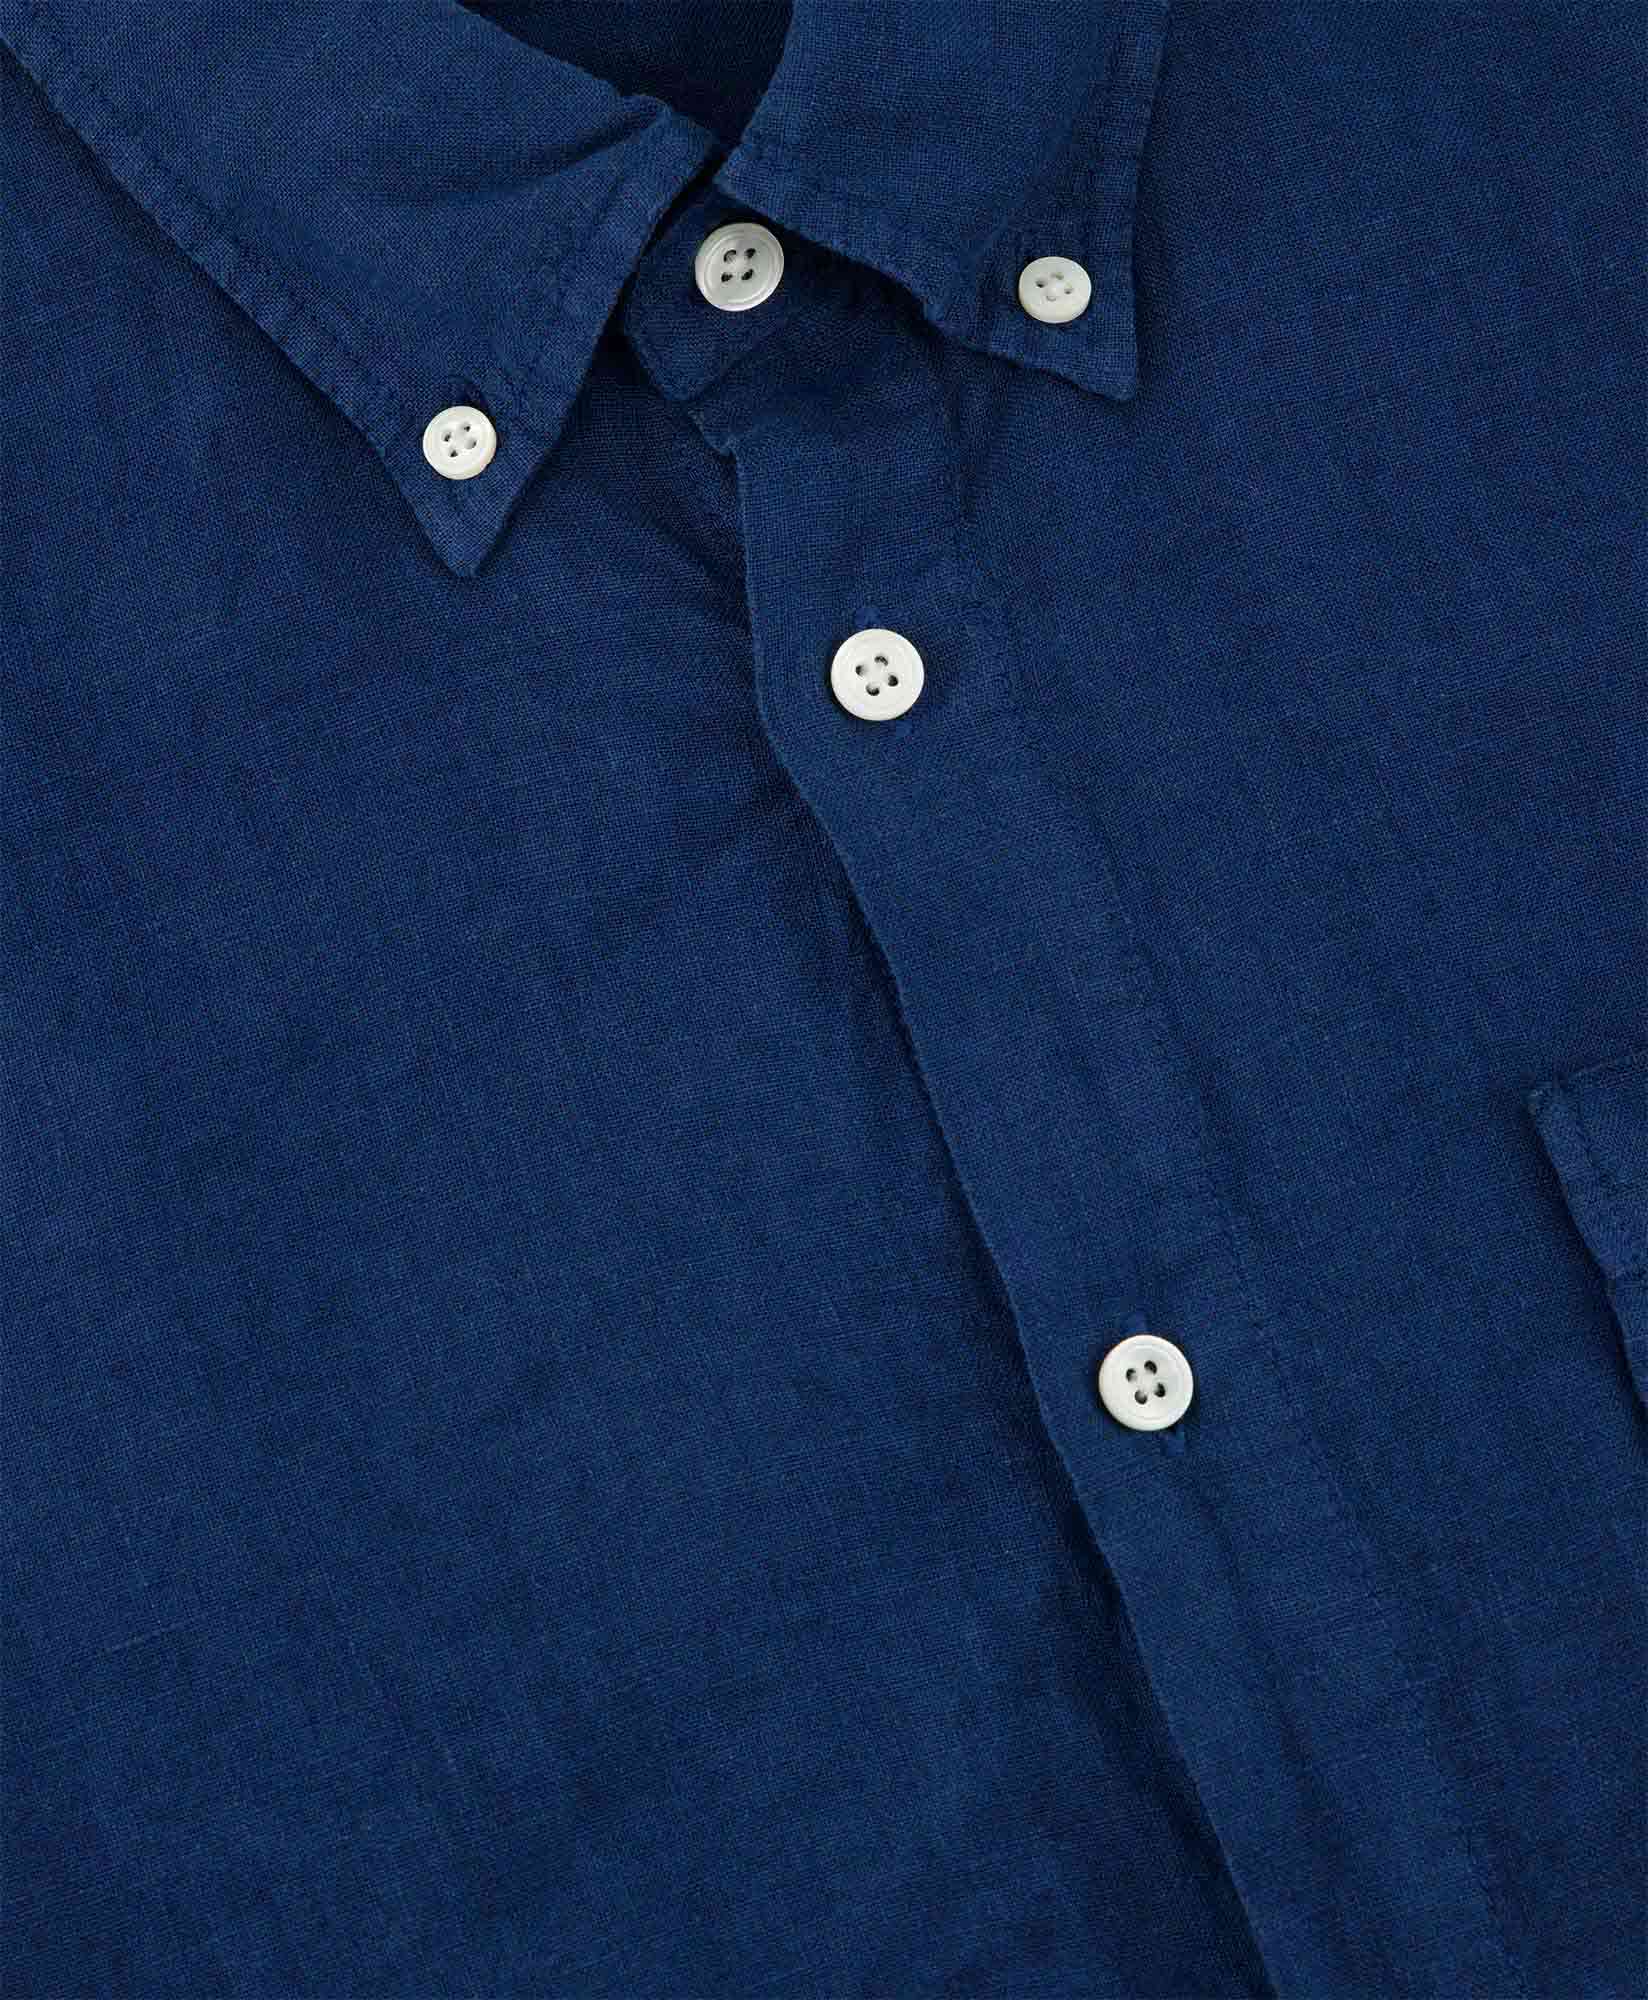 Nn07 Overhemd Arne 5706 Donker Blauw